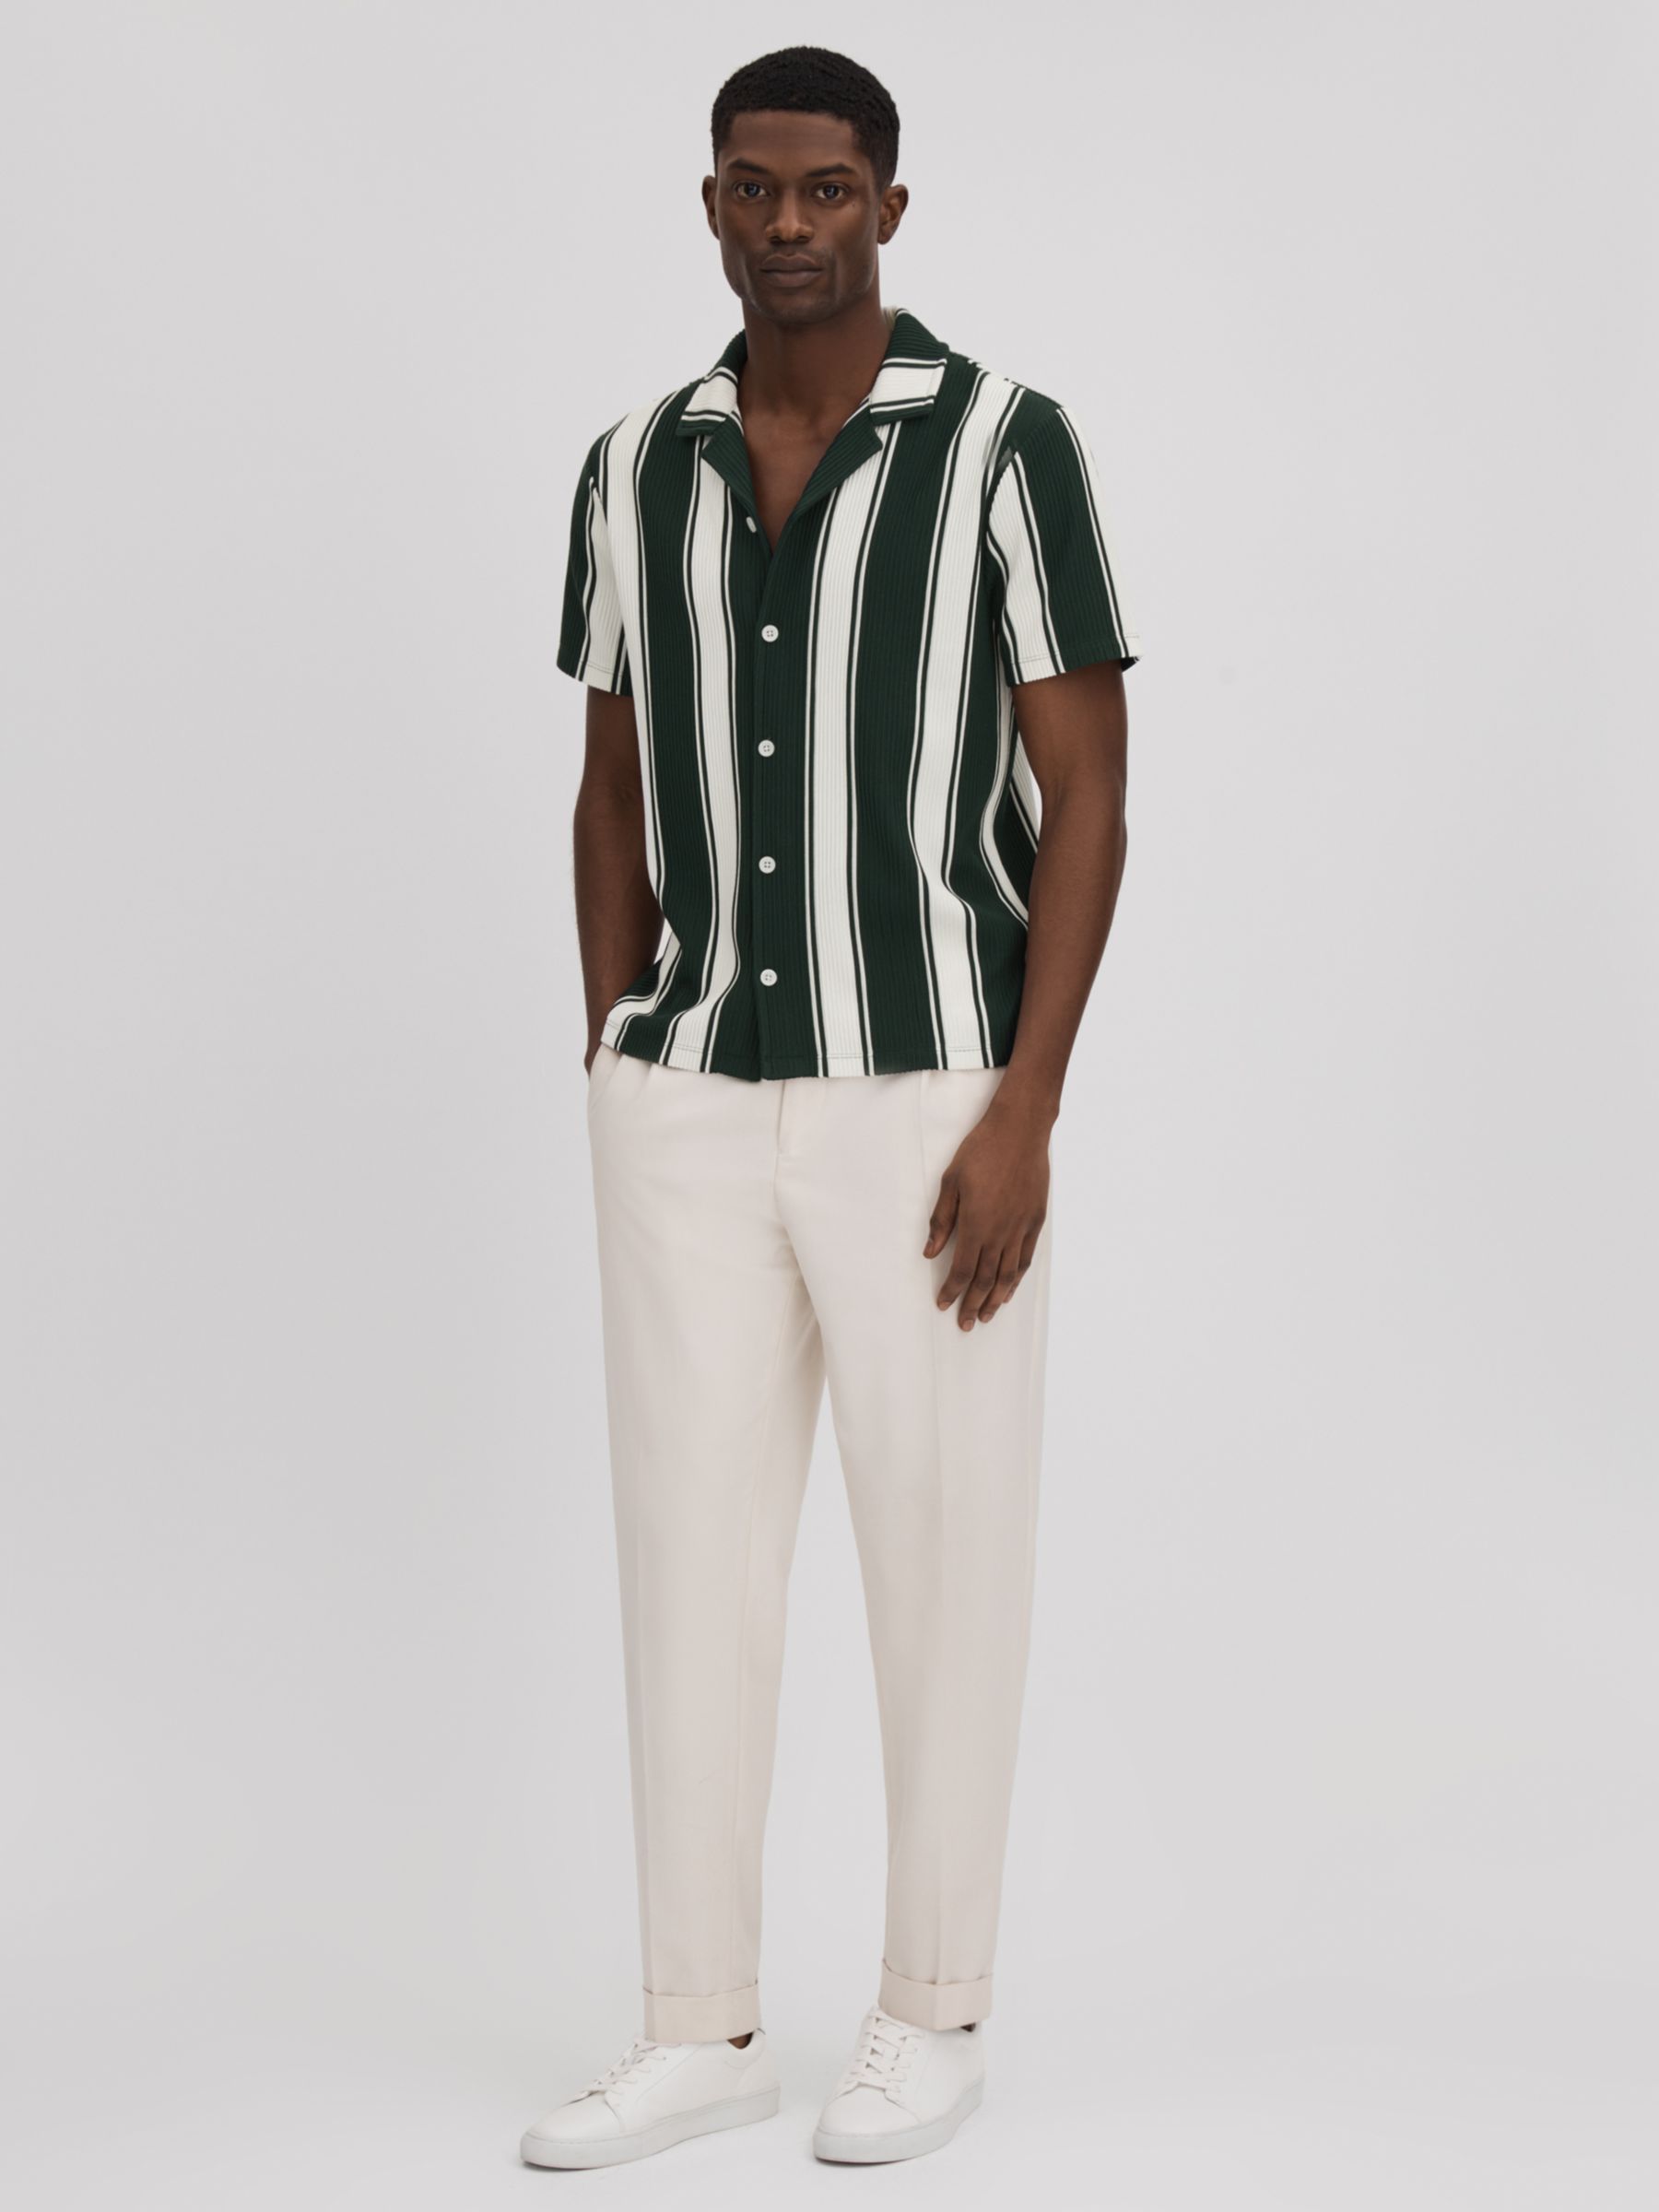 Reiss Alton Textured Stripe Shirt, Green/White, XS